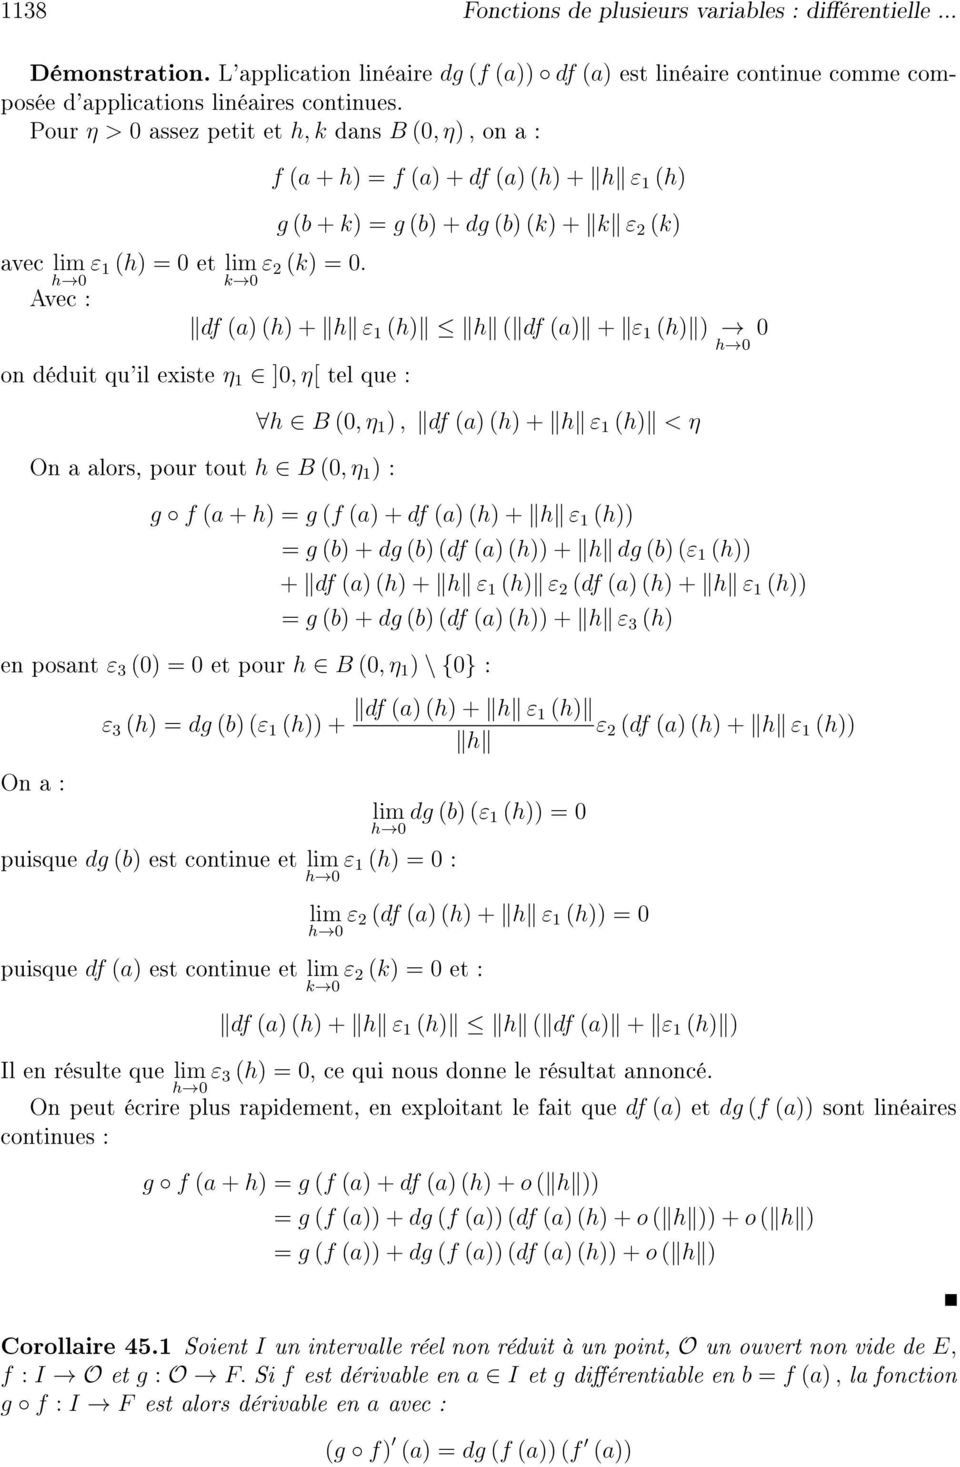 h 0 k 0 Avec : df (a) (h) + h ε 1 (h) h ( df (a) + ε 1 (h) ) 0 h 0 on déduit qu'il existe η 1 ]0, η[ tel que : On a alors, pour tout h B (0, η 1 ) : h B (0, η 1 ), df (a) (h) + h ε 1 (h) < η g f (a +